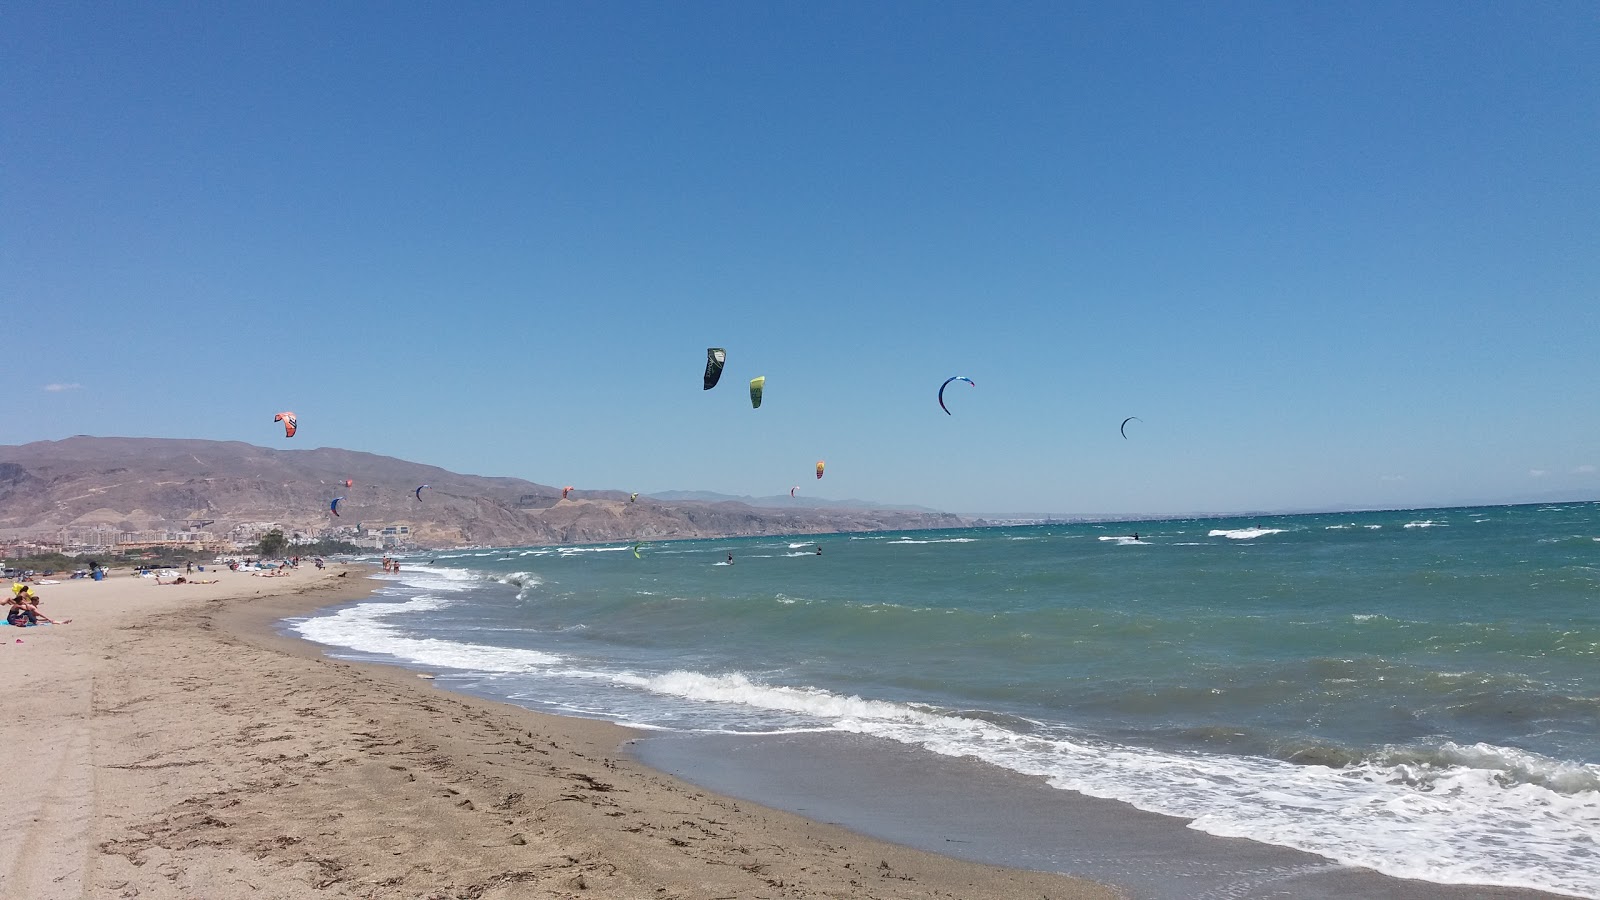 Playa de las Salinas'in fotoğrafı gri kum yüzey ile